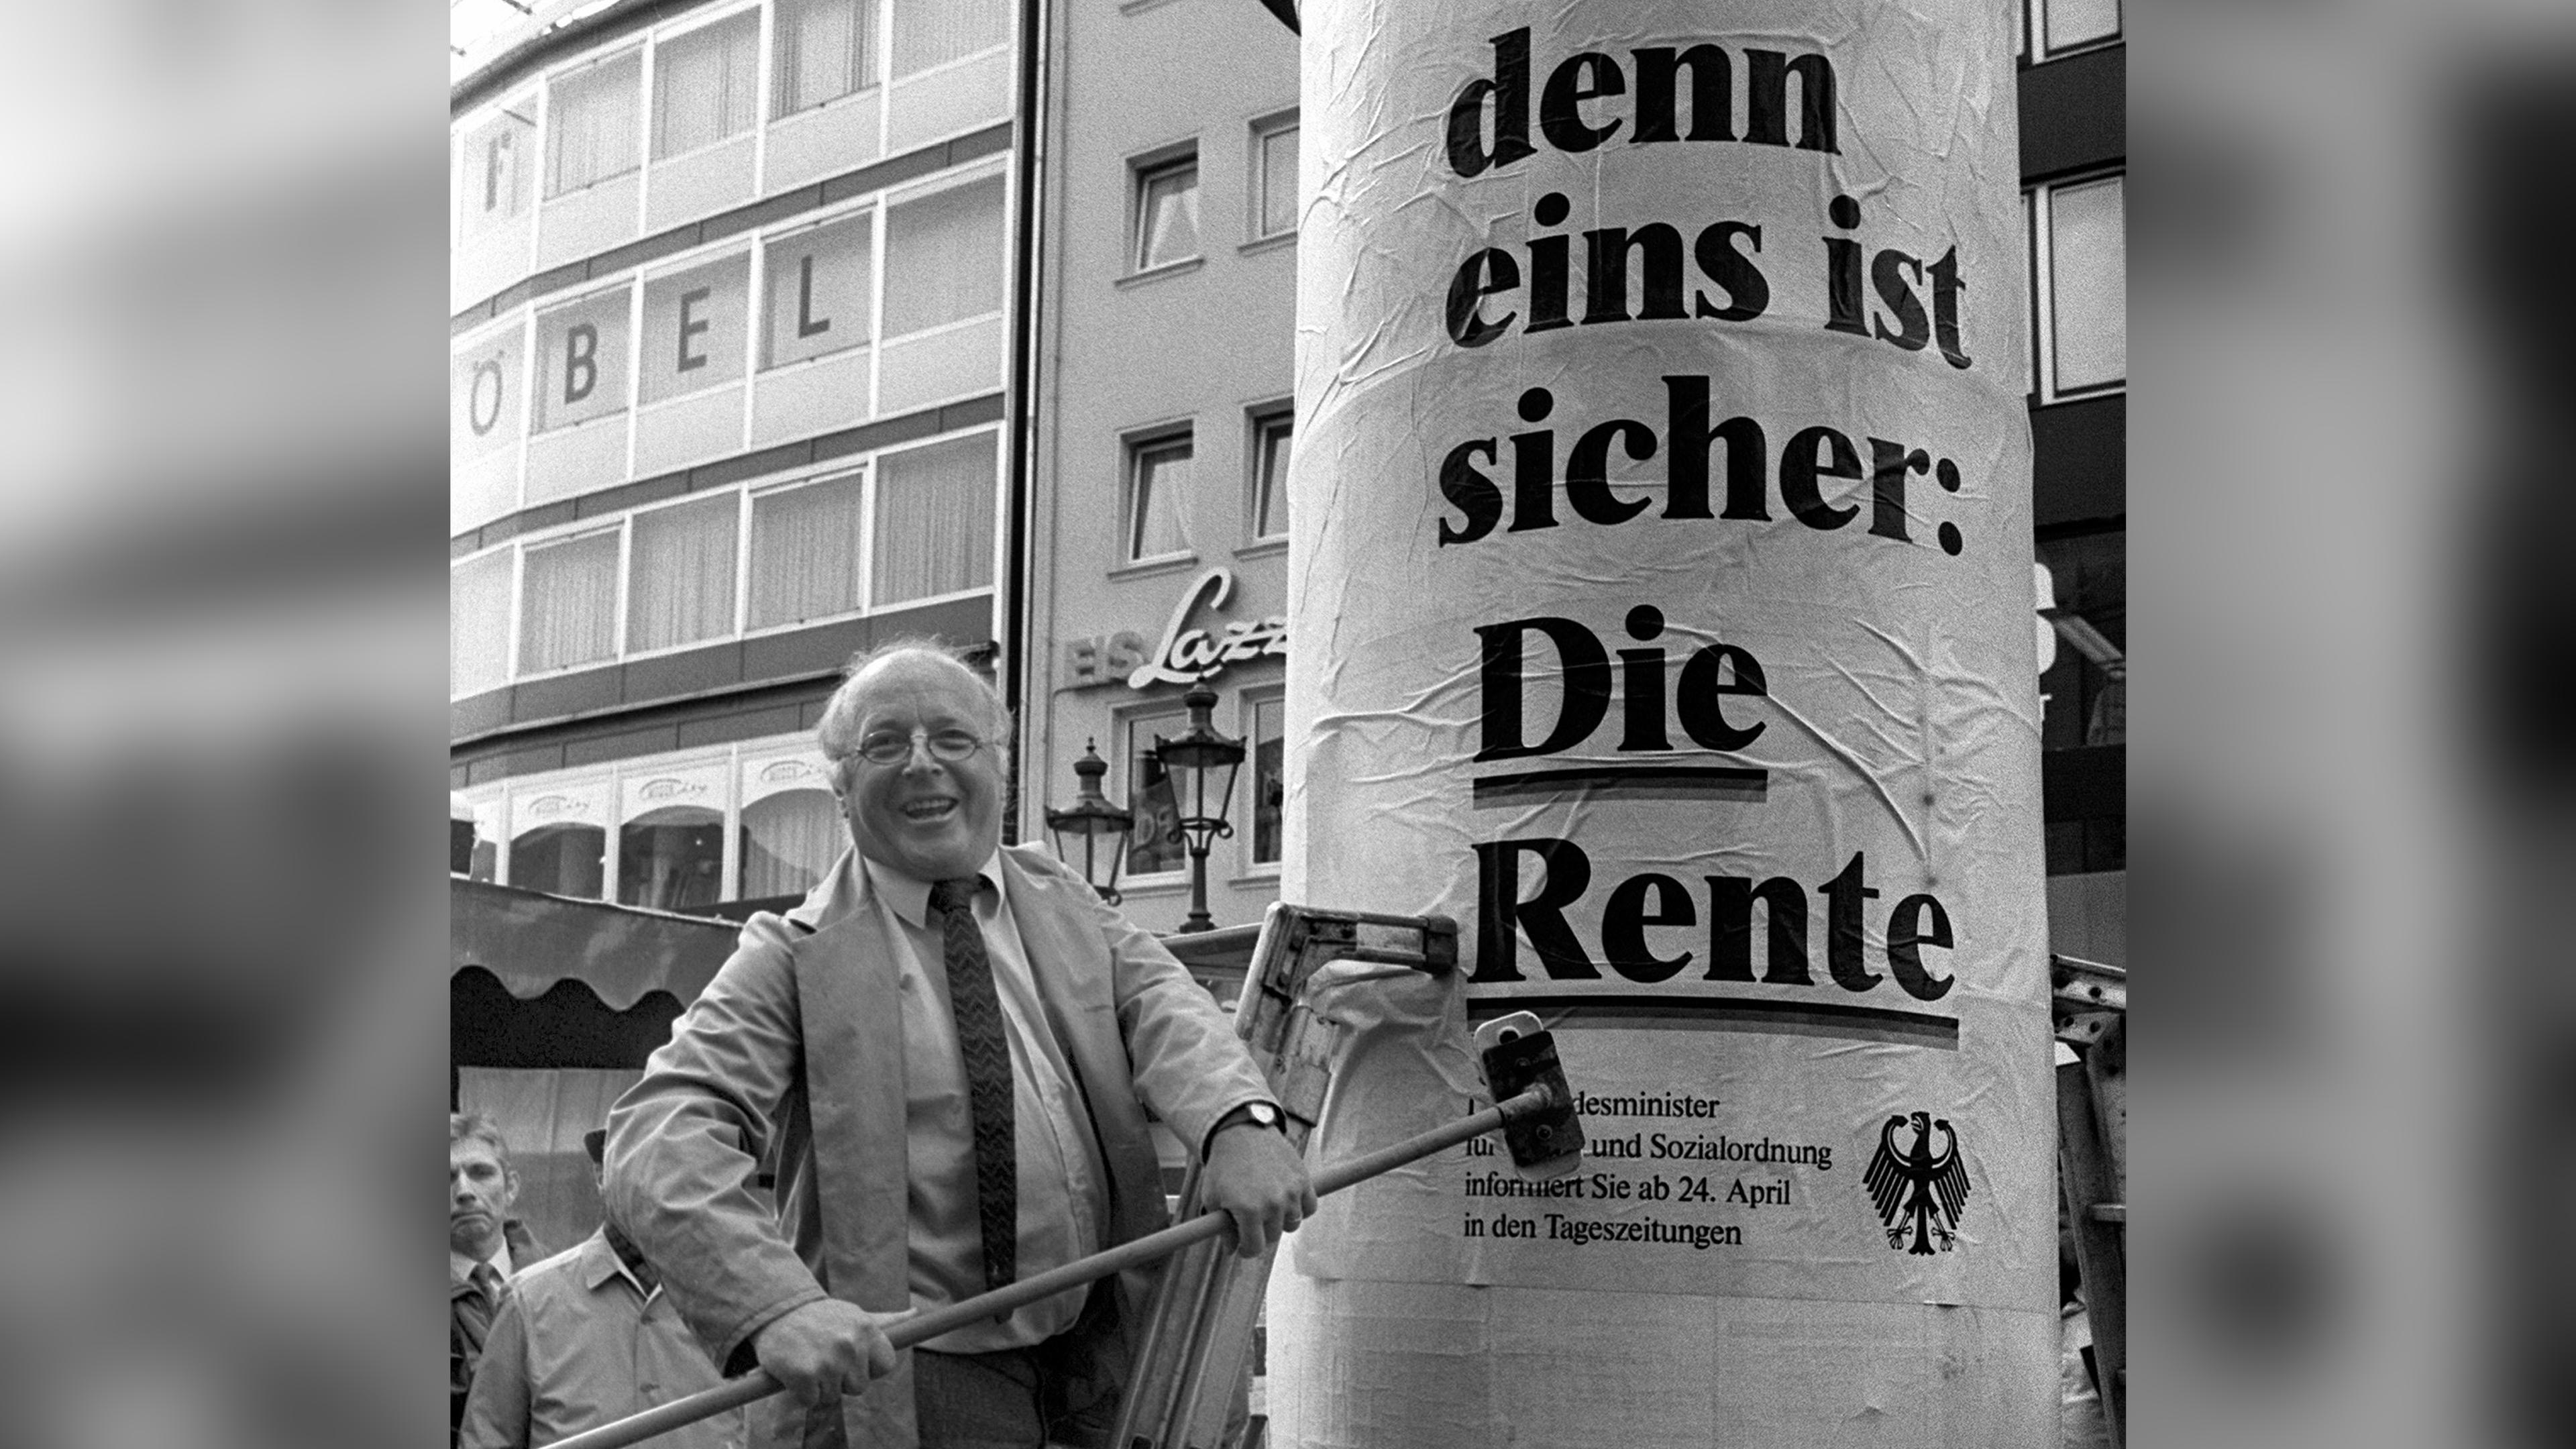 Der damalige Bundesarbeitsminister Norbert Blüm bringt eigenhändig ein Plakat mit der Aufschrift "... denn eins ist sicher: Die Rente" auf einer Litfaßsäule in Bonn an.